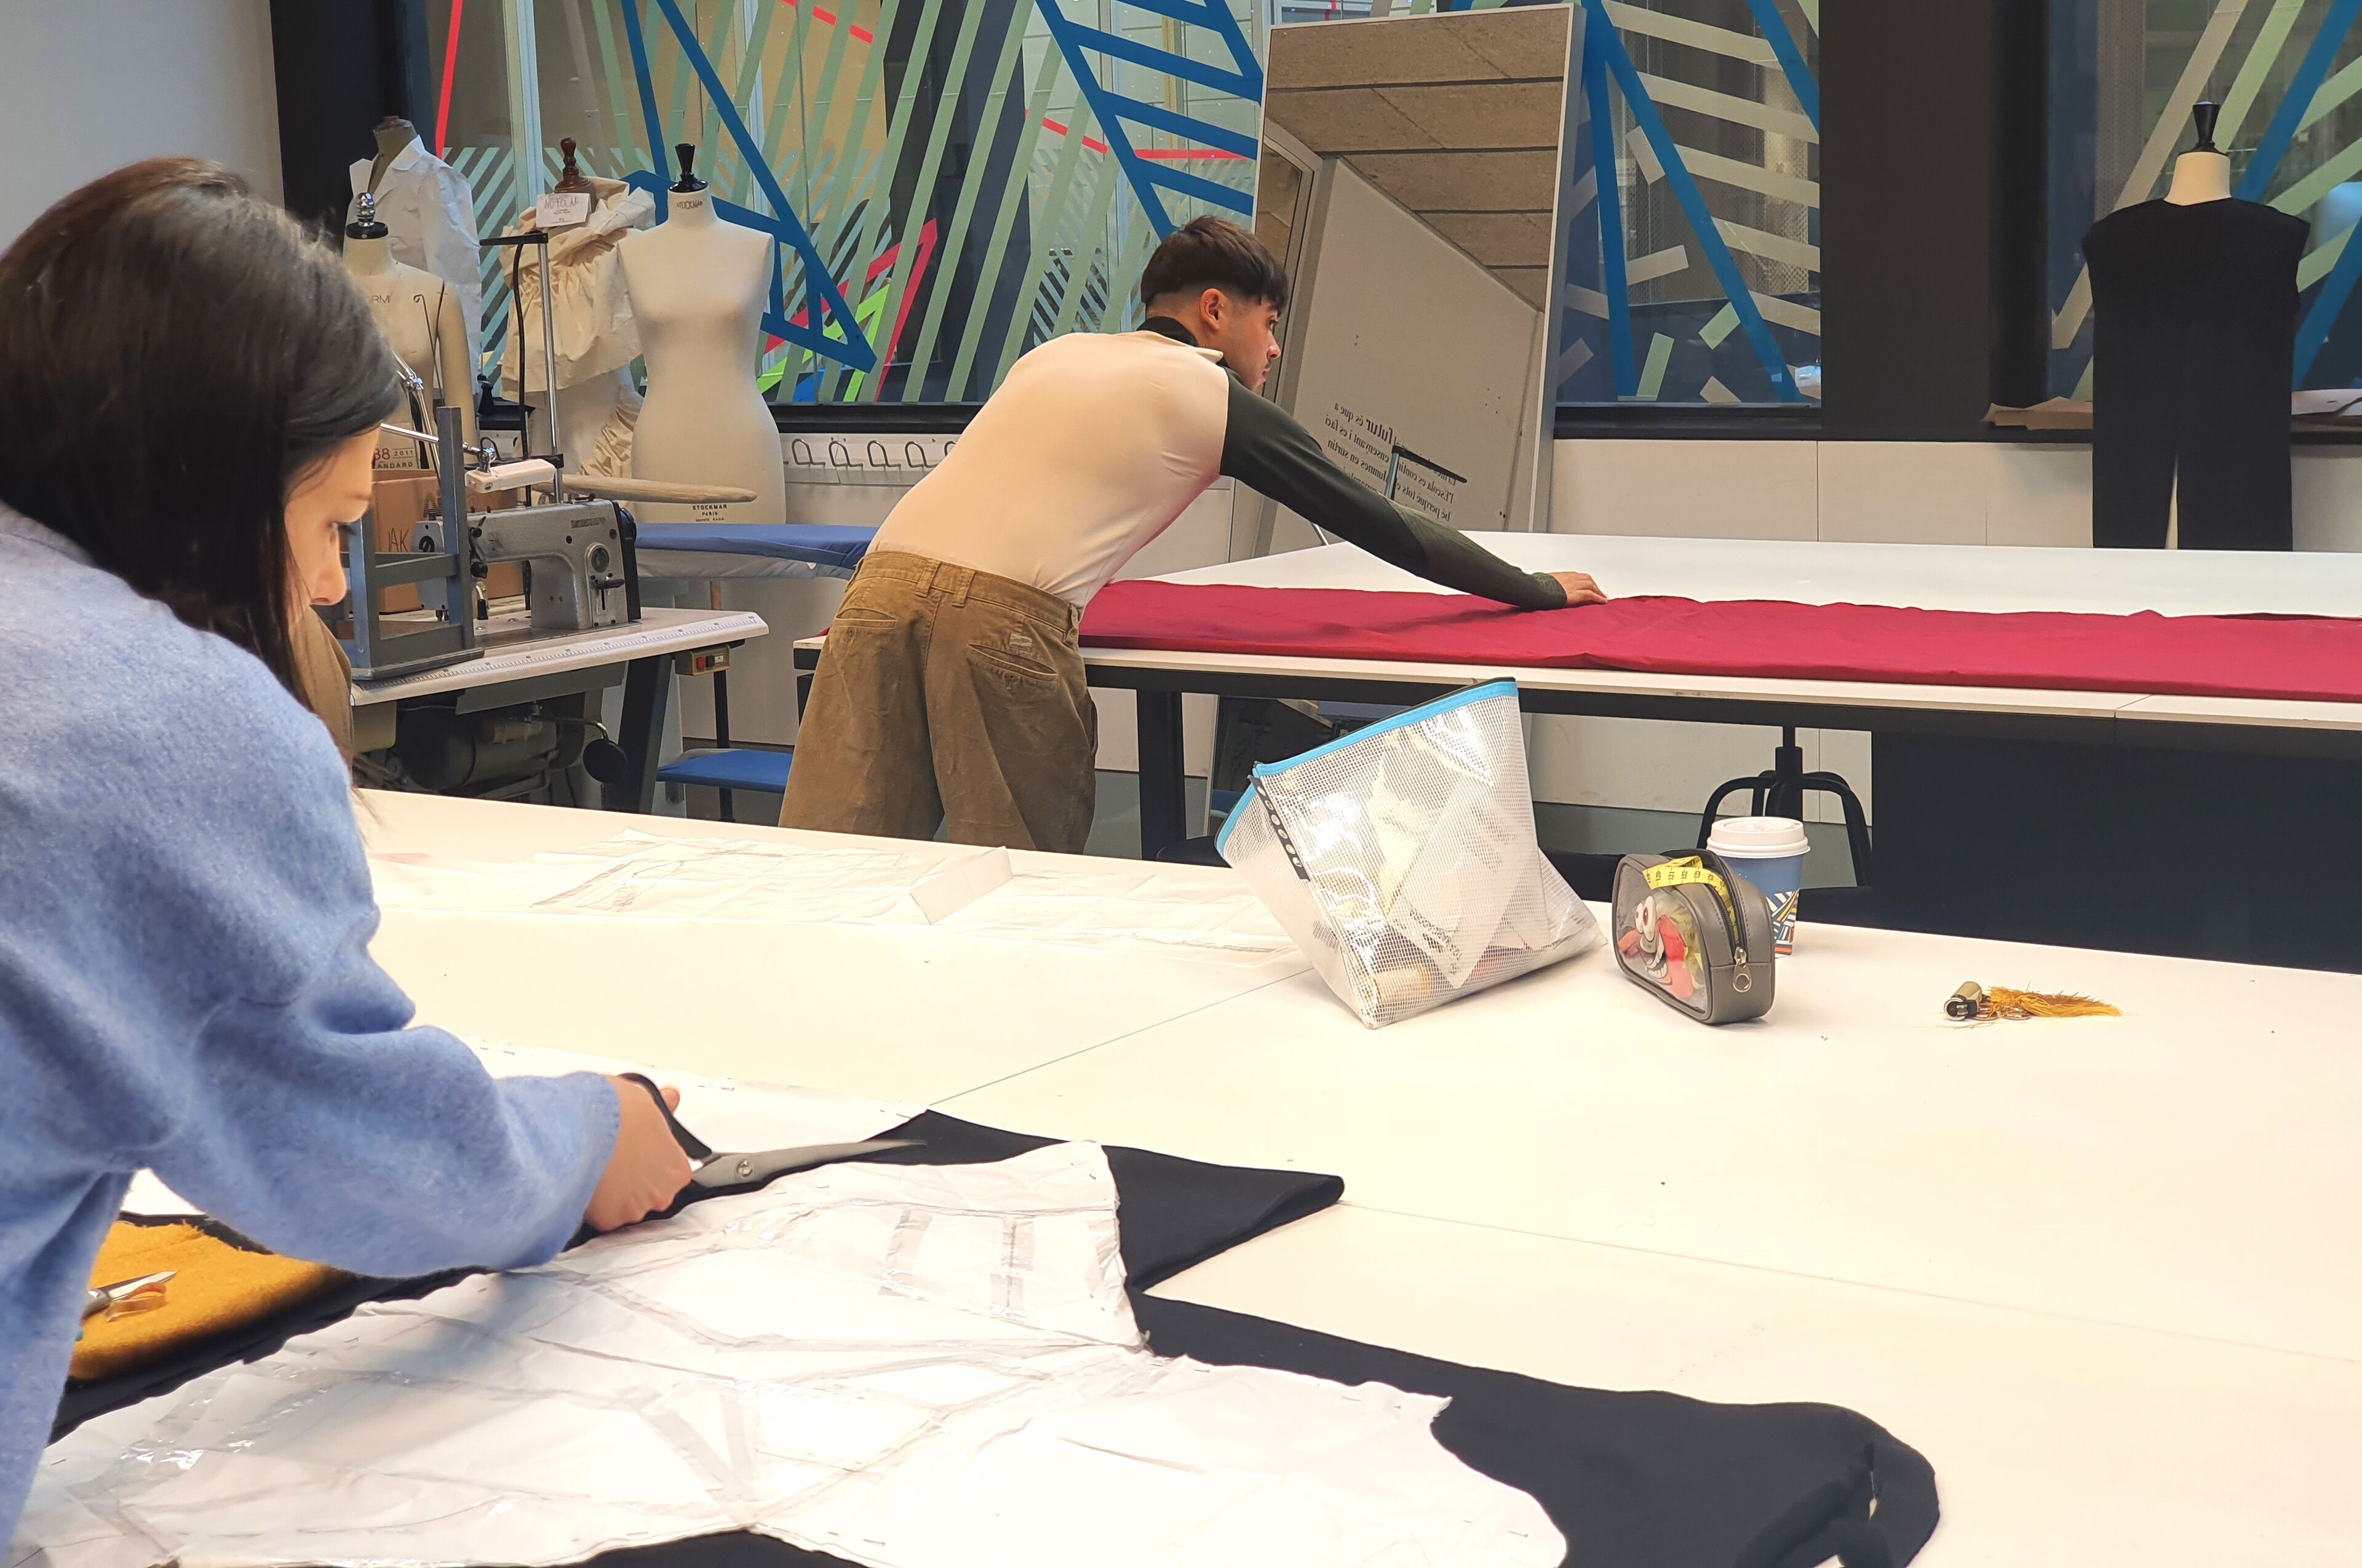 Estudiantes de diseño de moda están ocupados cortando y preparando tela en grandes mesas en un estudio de diseño iluminado.

